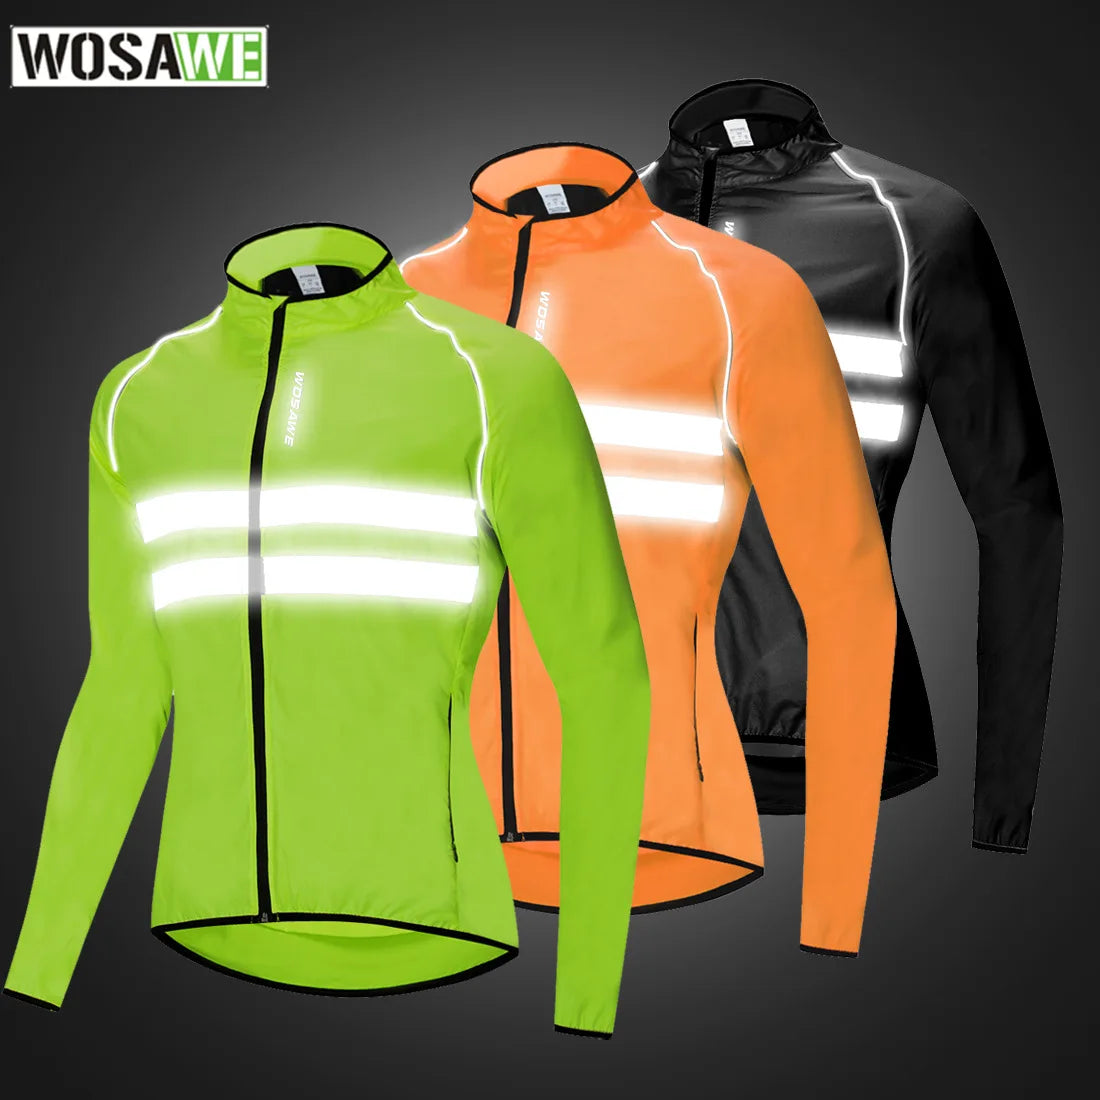 Wosawe ultraleve reflexivo jaqueta de ciclismo dos homens longo à prova dwindproof água vento estrada mountain bike mtb jaquetas blusão